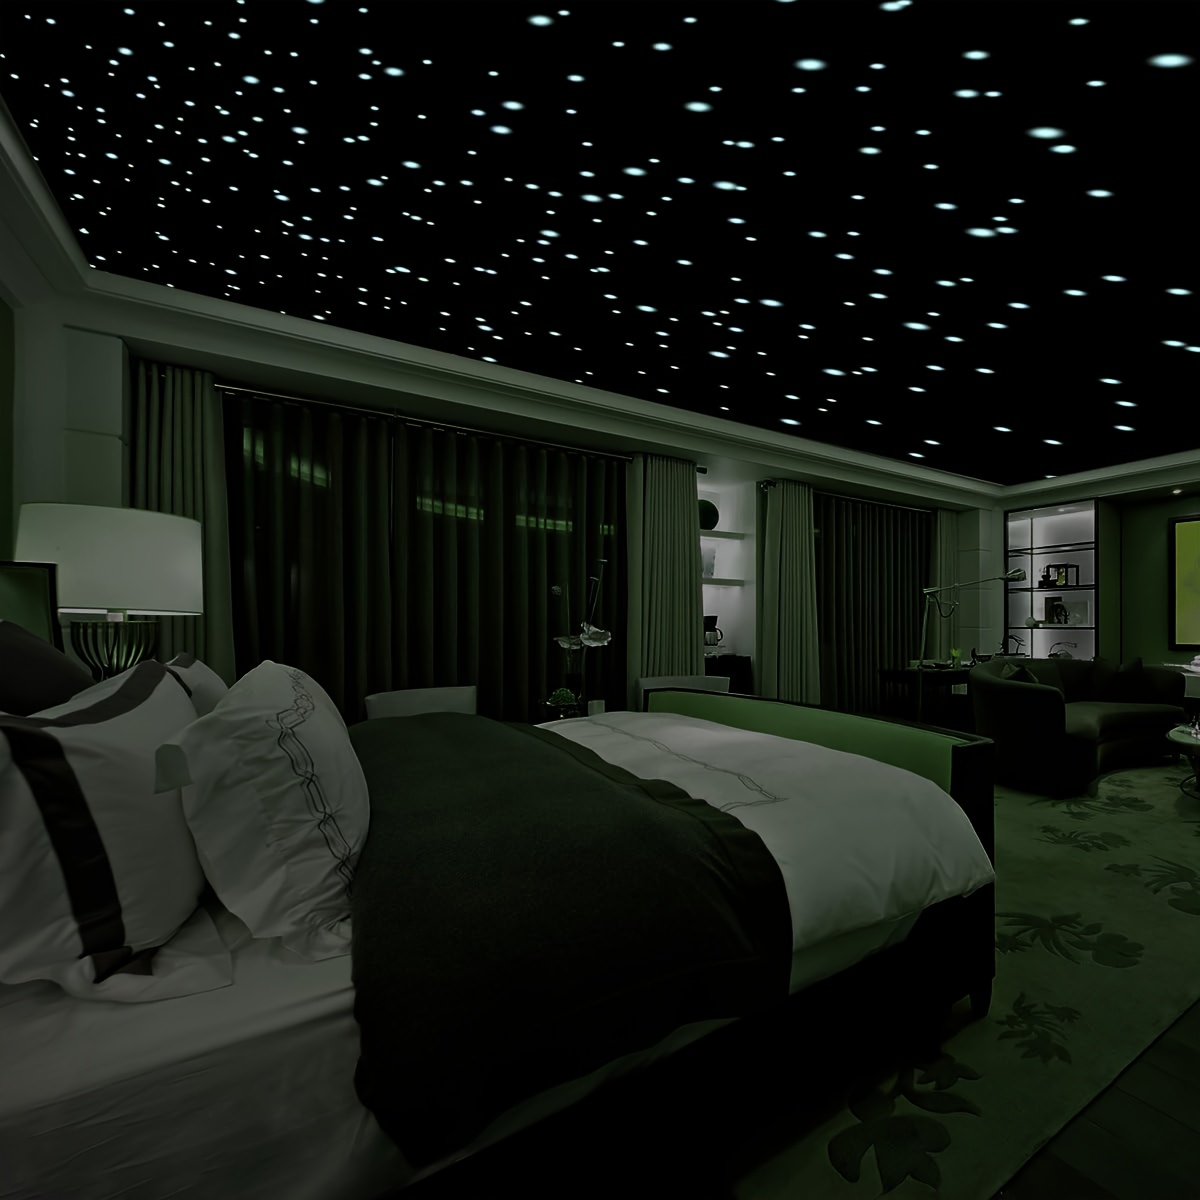 200 piezas de pegatinas de estrellas 3D para la pared, el techo en el  dormitorio o la habitación de los niños, luminosidad fluorescente larga  garantizada Vhermosa LKX-0381-1